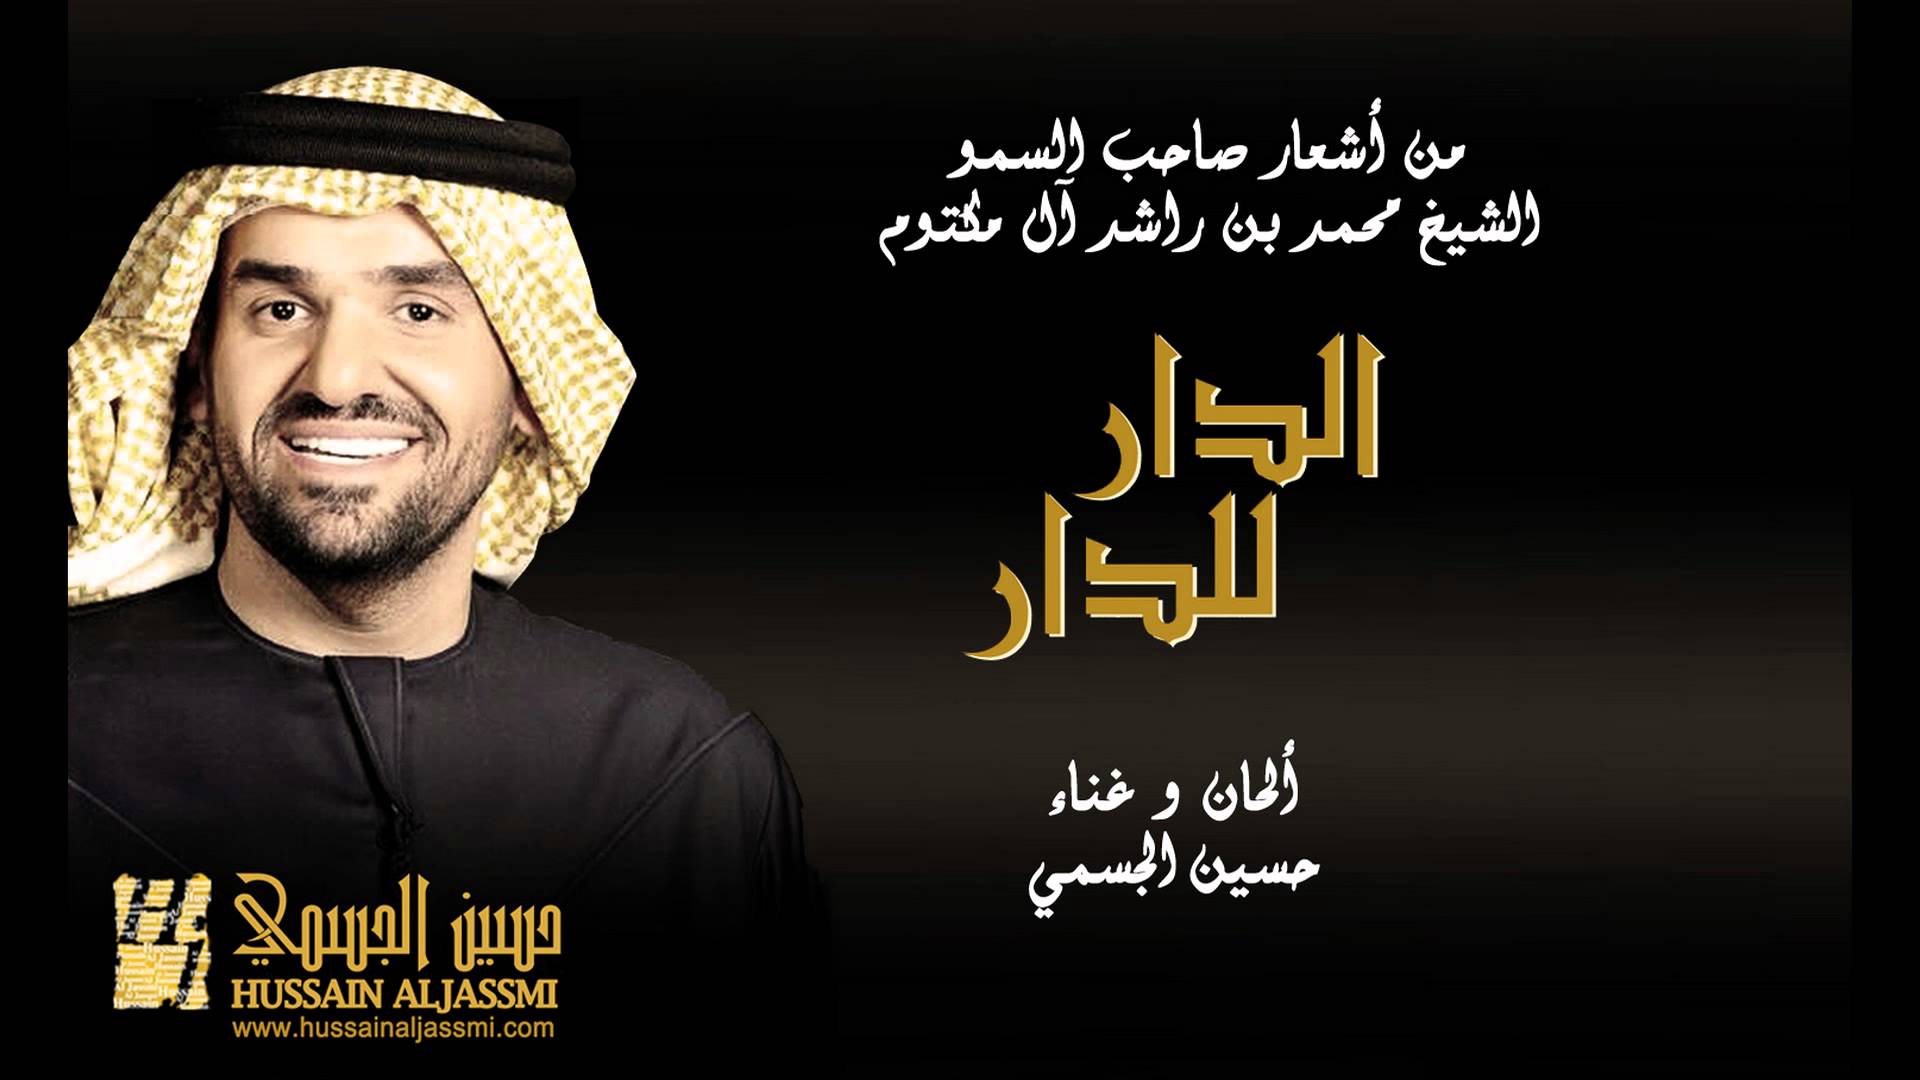 يوتيوب تحميل اغنية الدار للدار حسين الجسمي 2015 Mp3